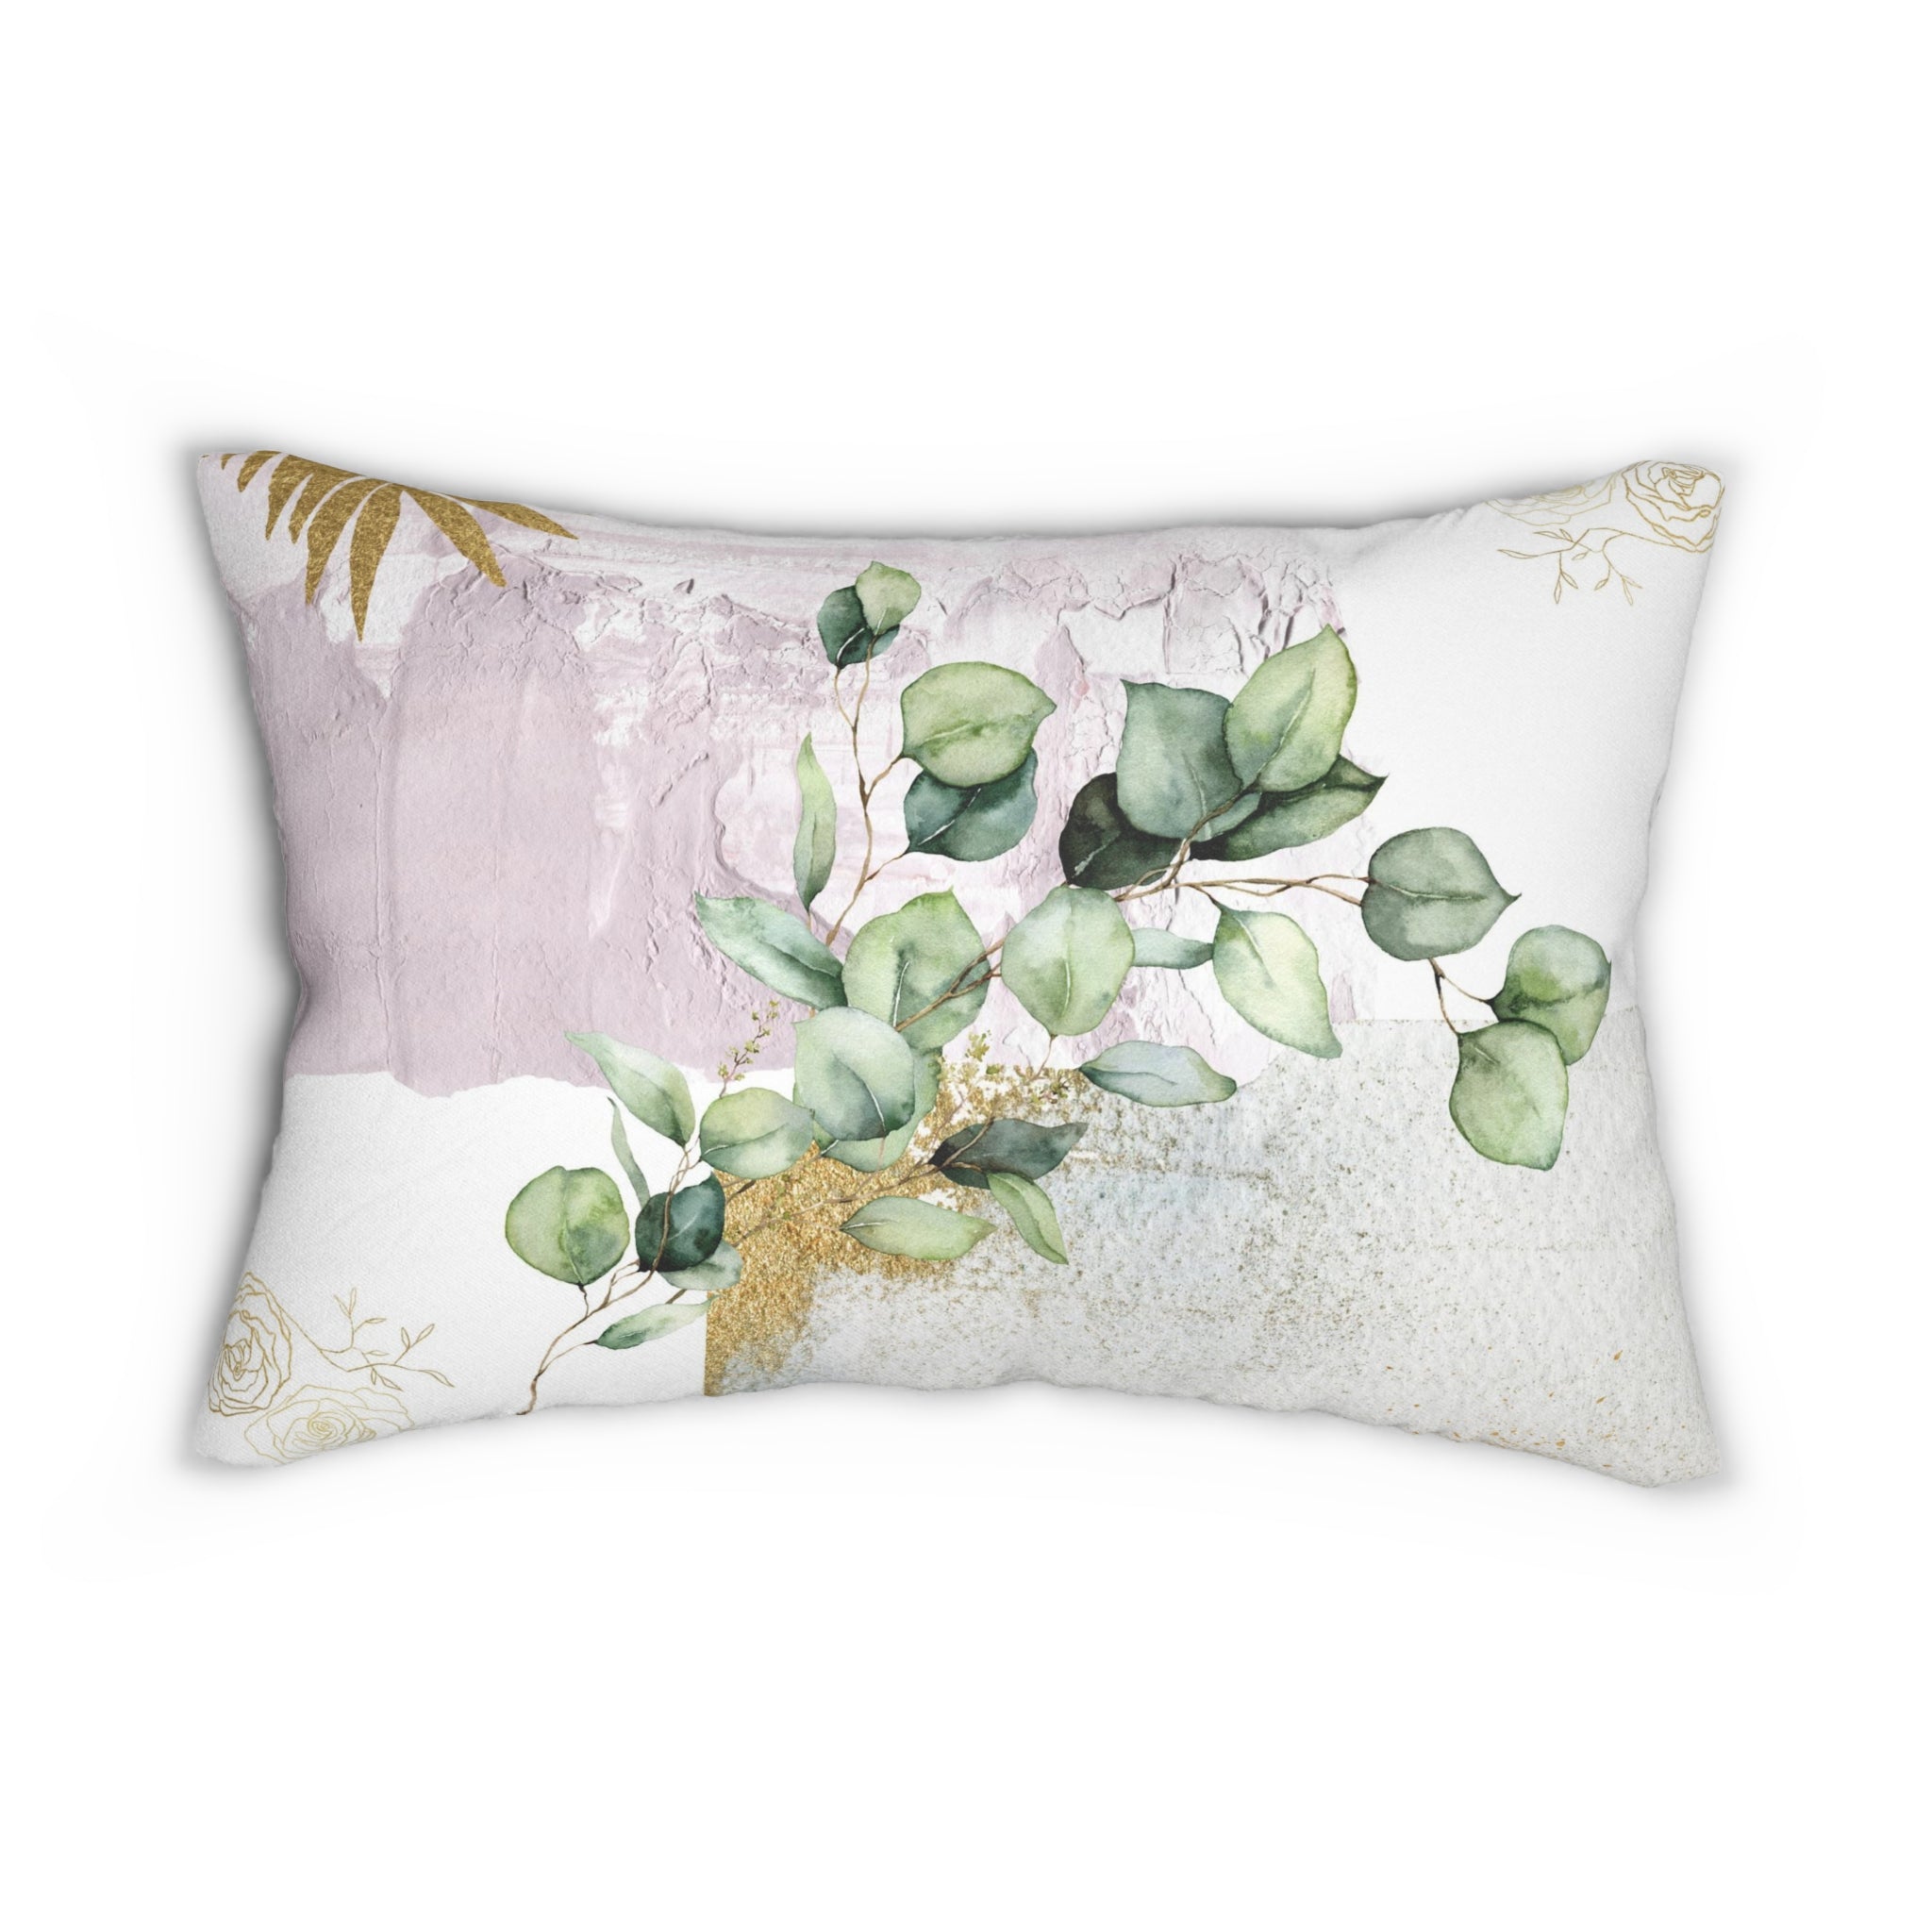 Floral Lumbar Pillow | Pastel White Lavender, Sage Green